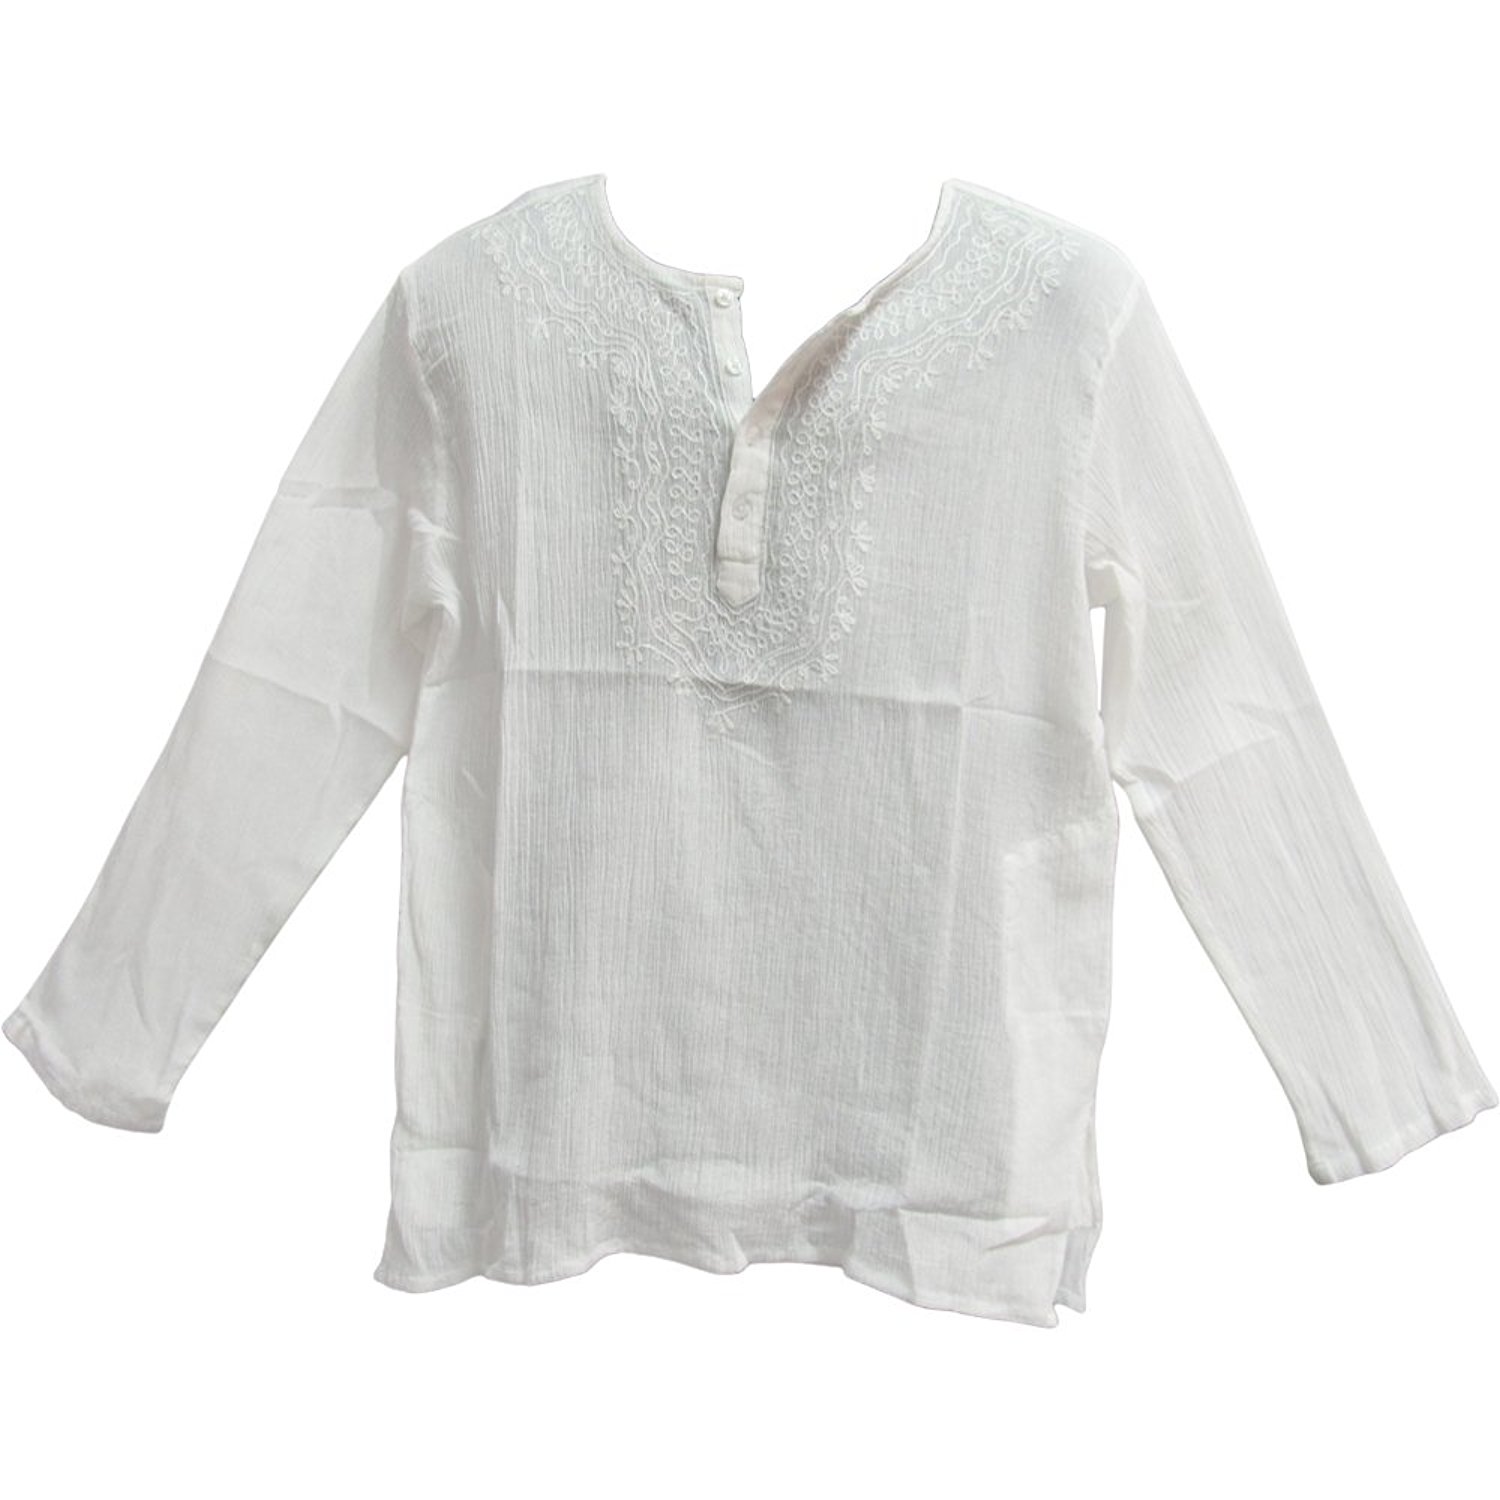 Mens Indian White Bohemian Crinkled Gauze Cotton Embroidered Tunic Shirt Kurta - Large - image 1 of 2